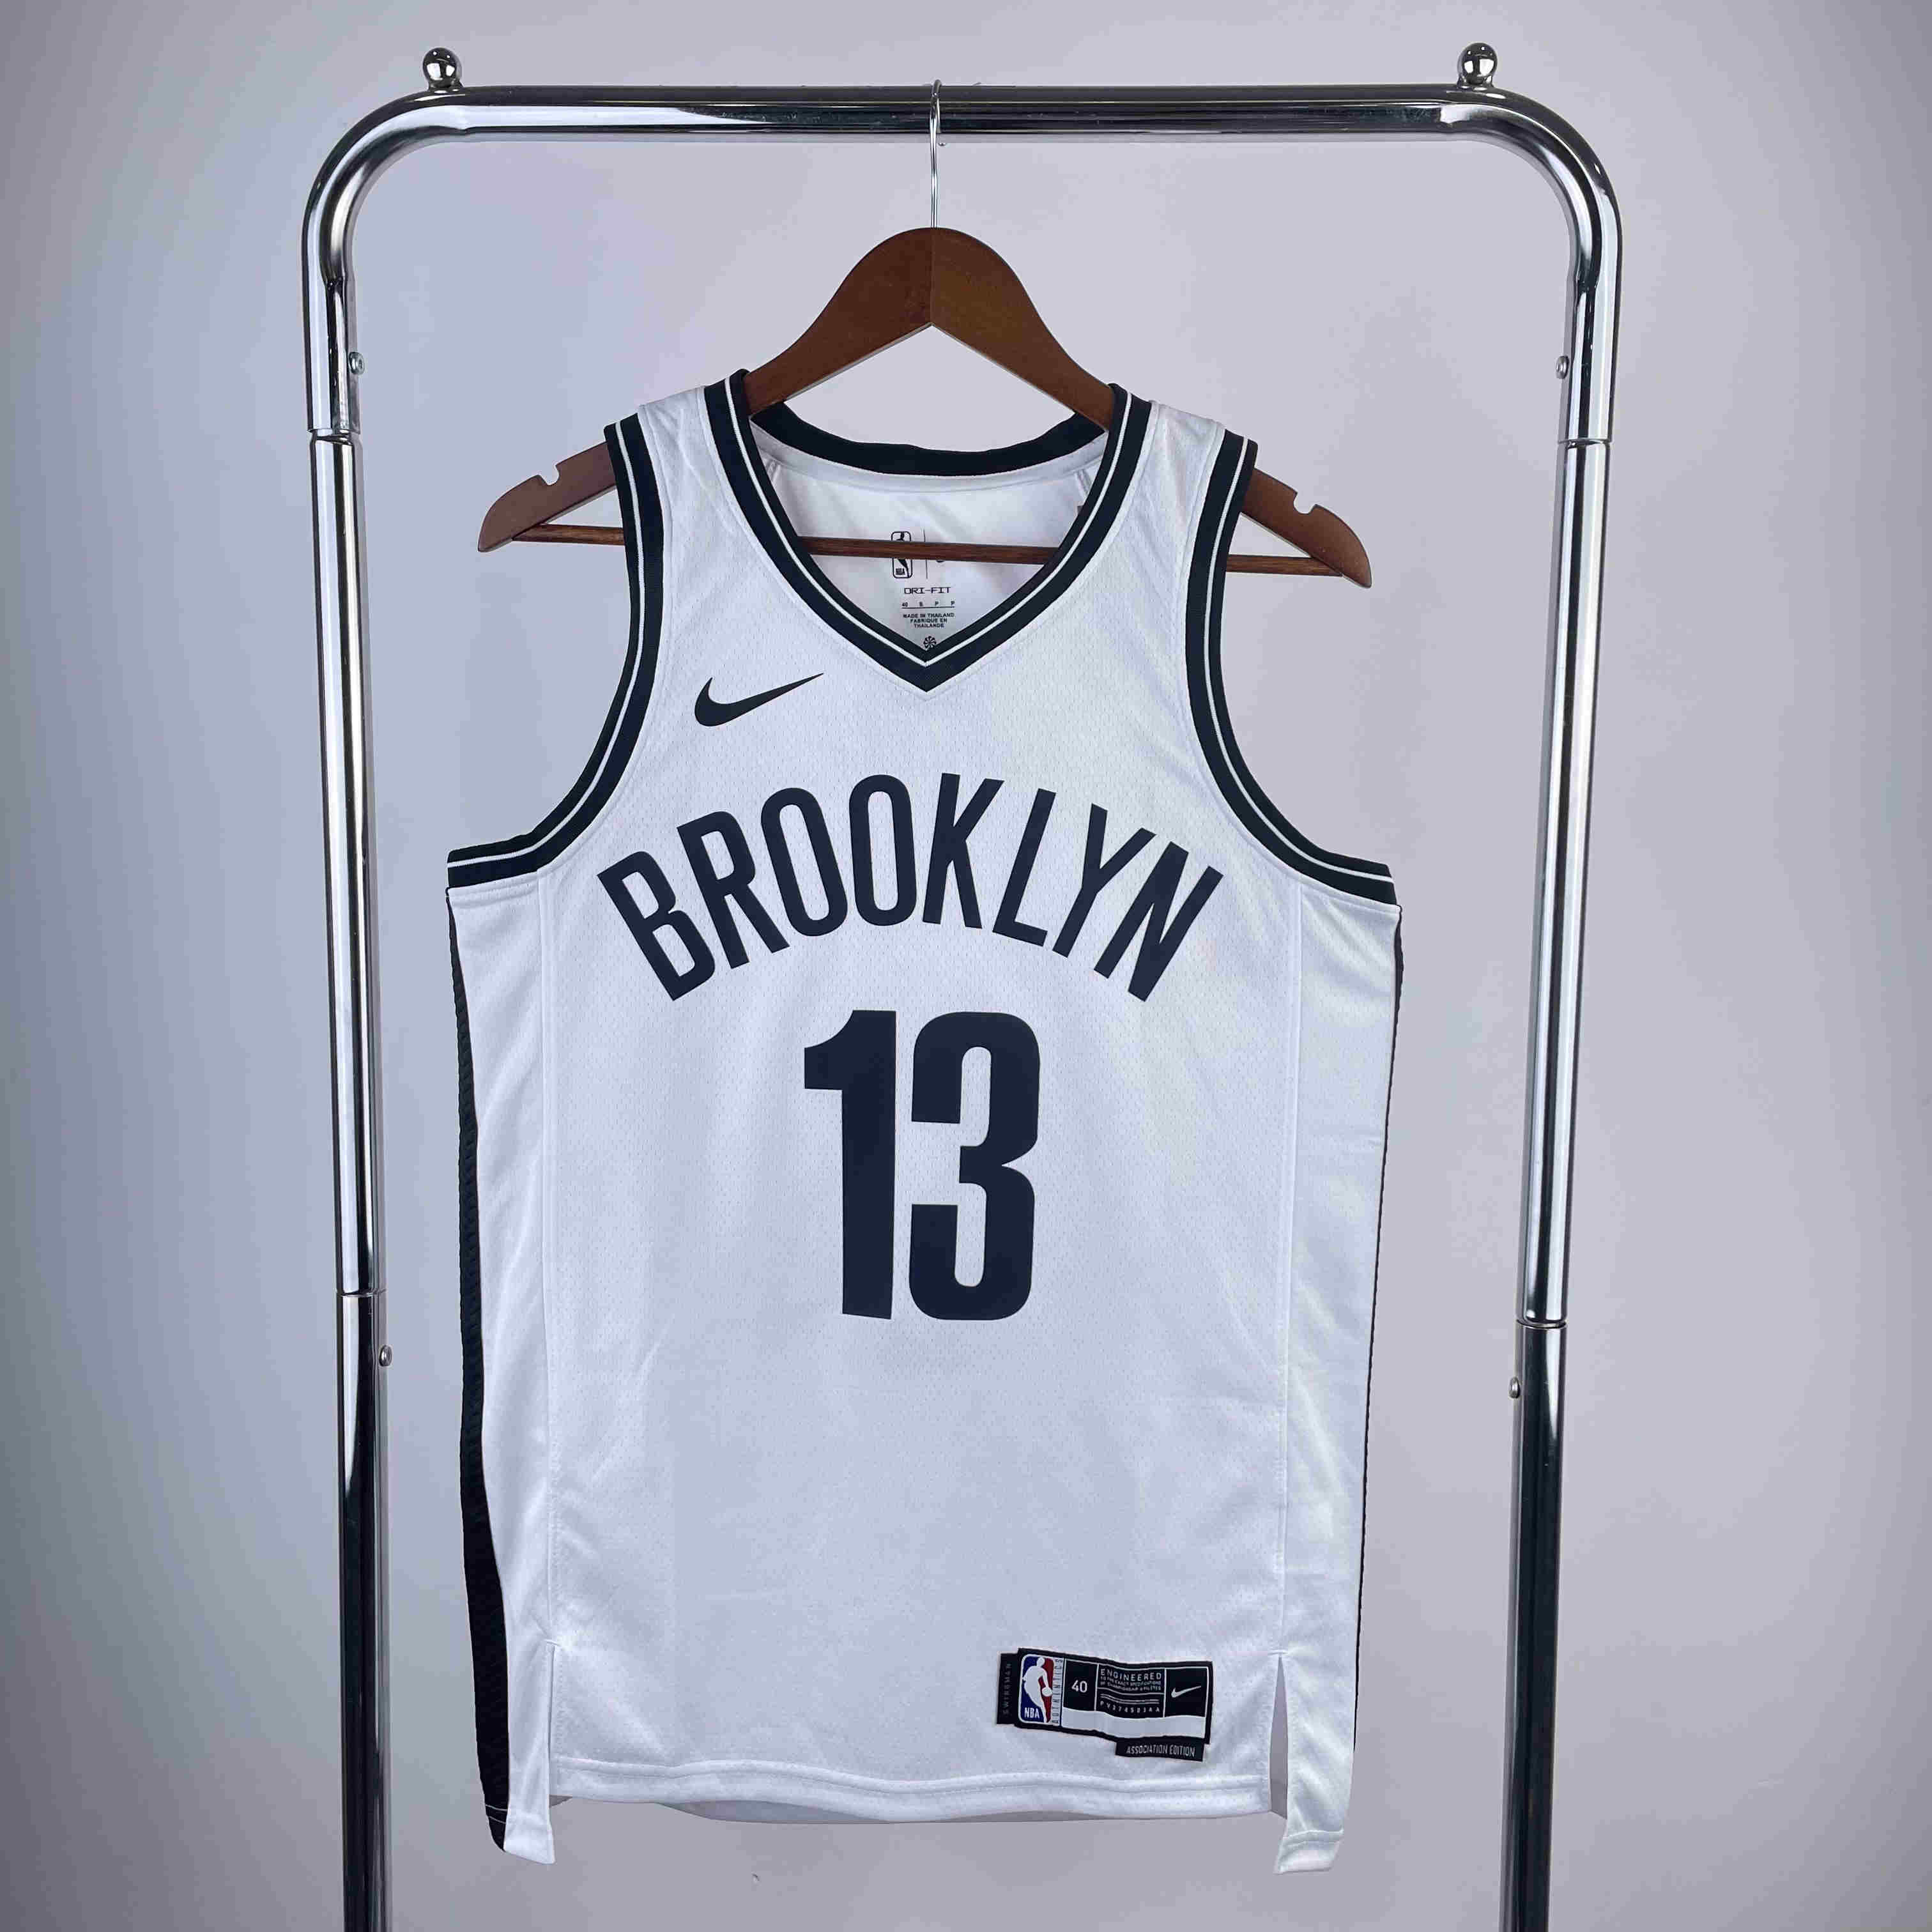 Brooklyn Nets NBA Jersey  Harden  13